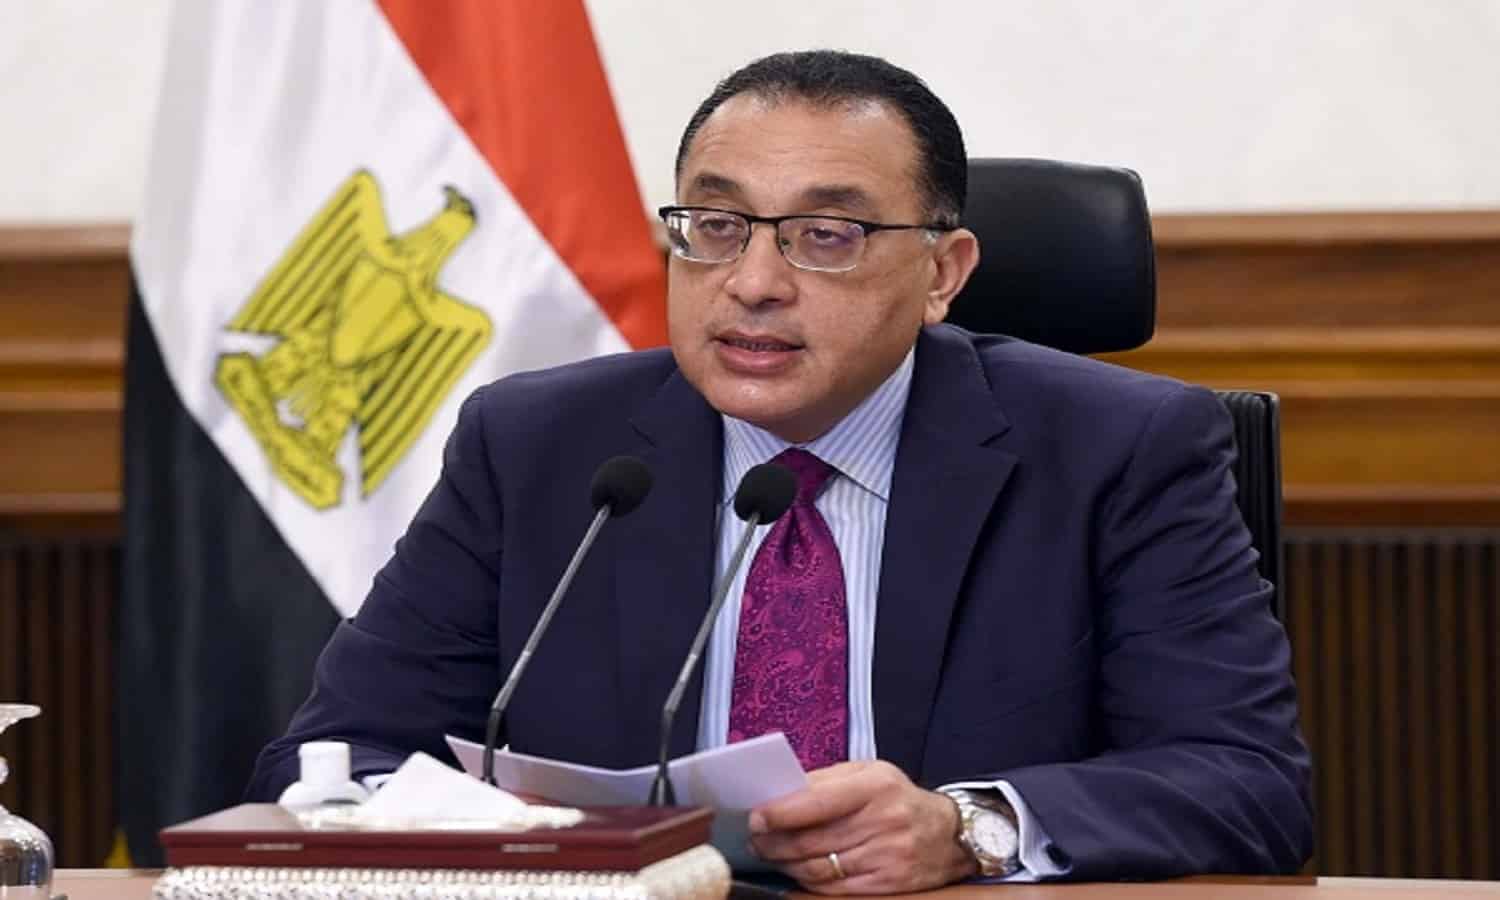 الحكومة توافق على إصدار مؤسسة التمويل الدولية سندات بالجنيه المصري في الأسواق الخارجية